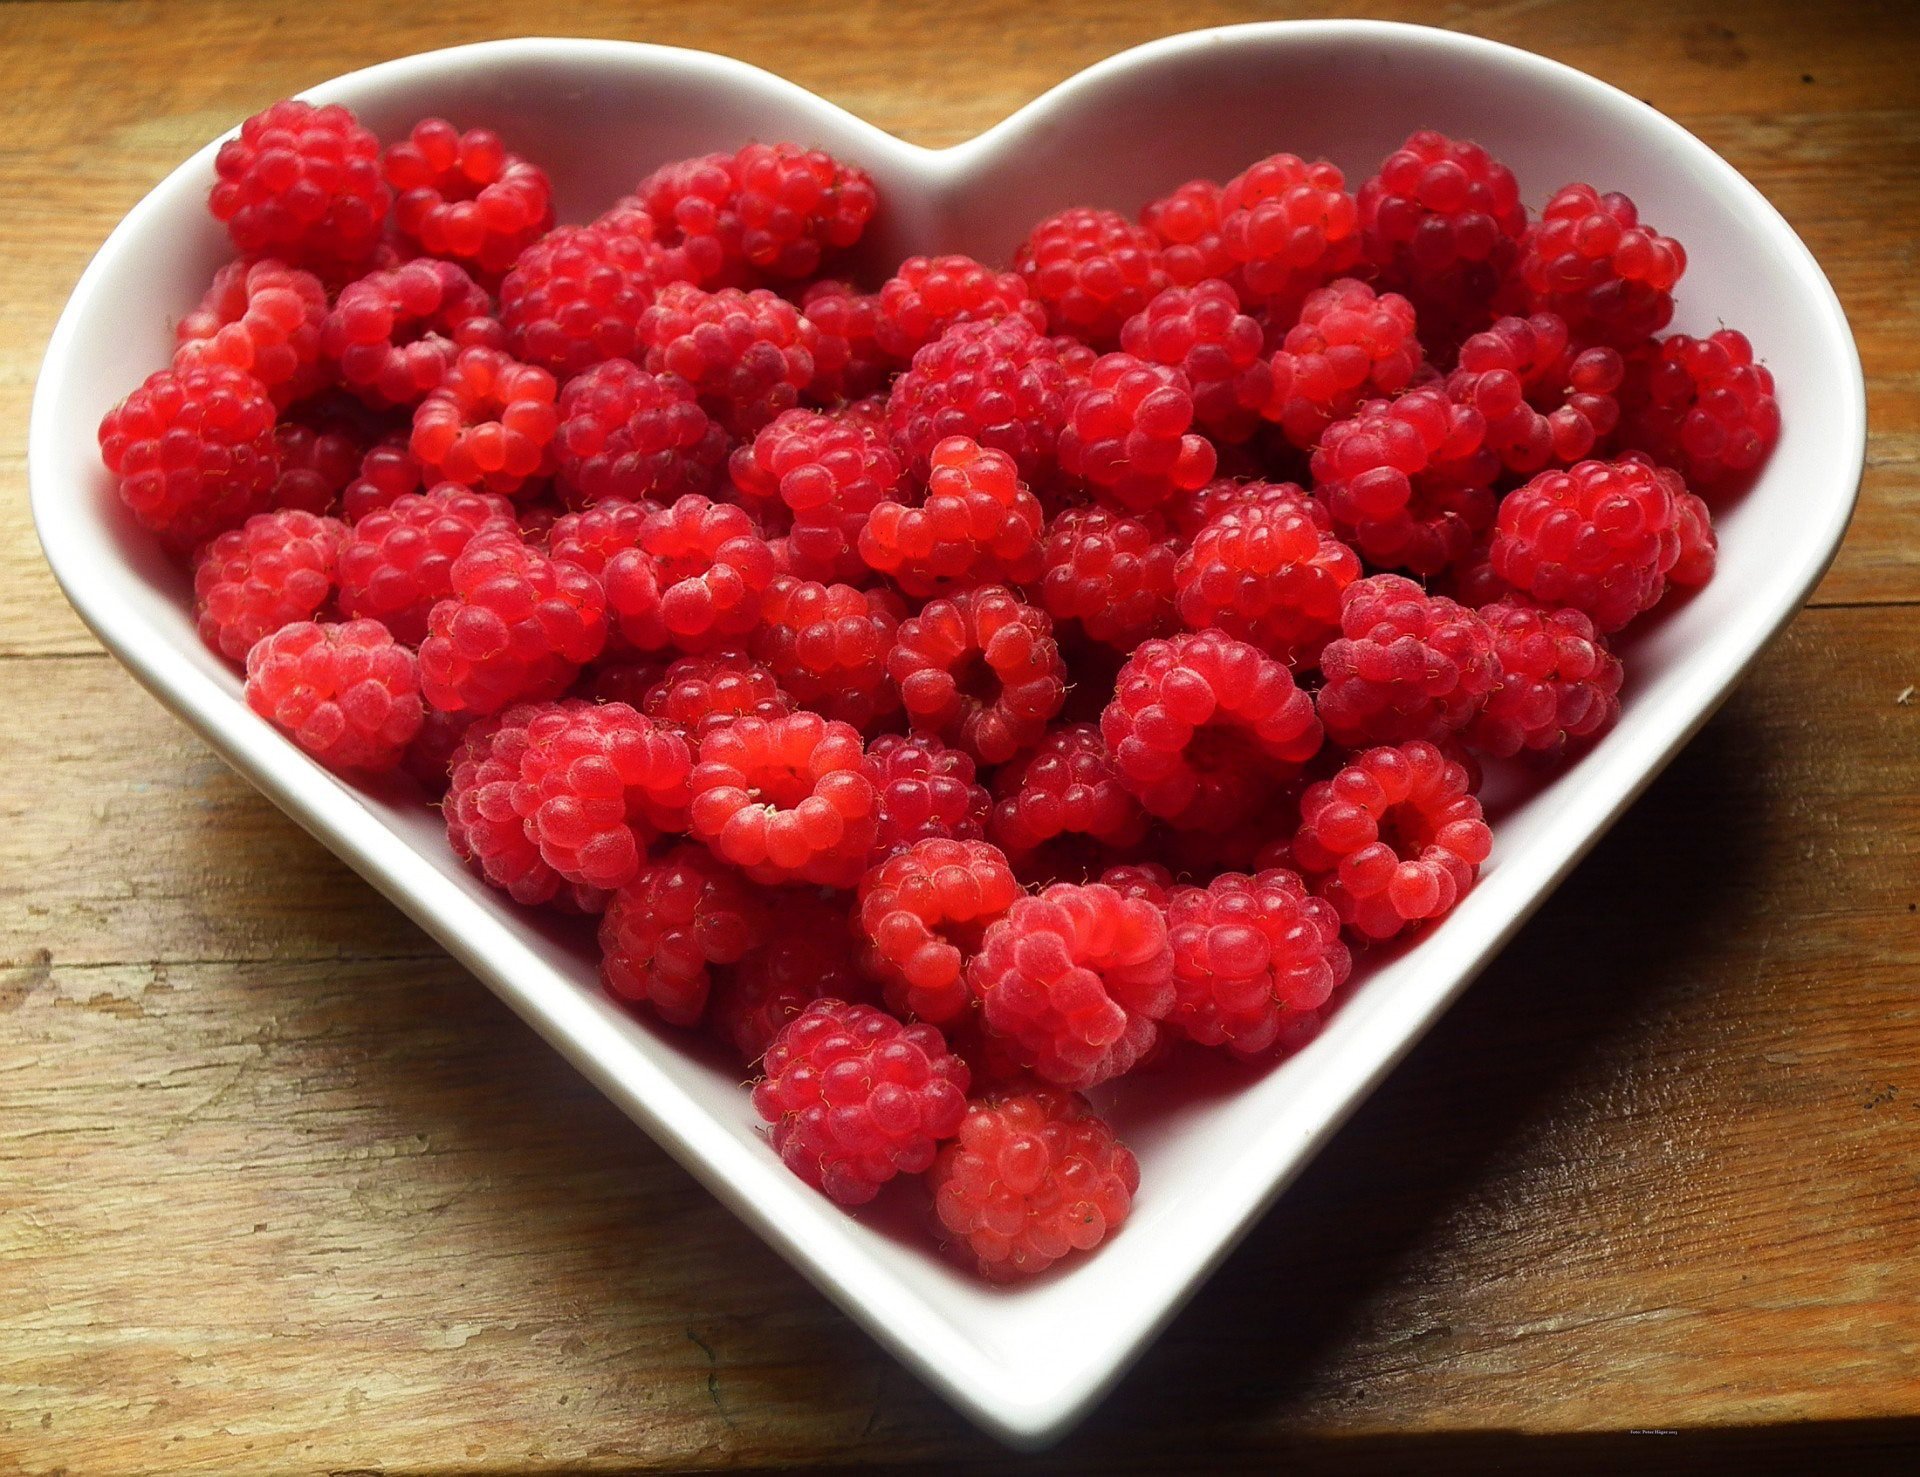 Fresh raspberries. | Source: Pexels